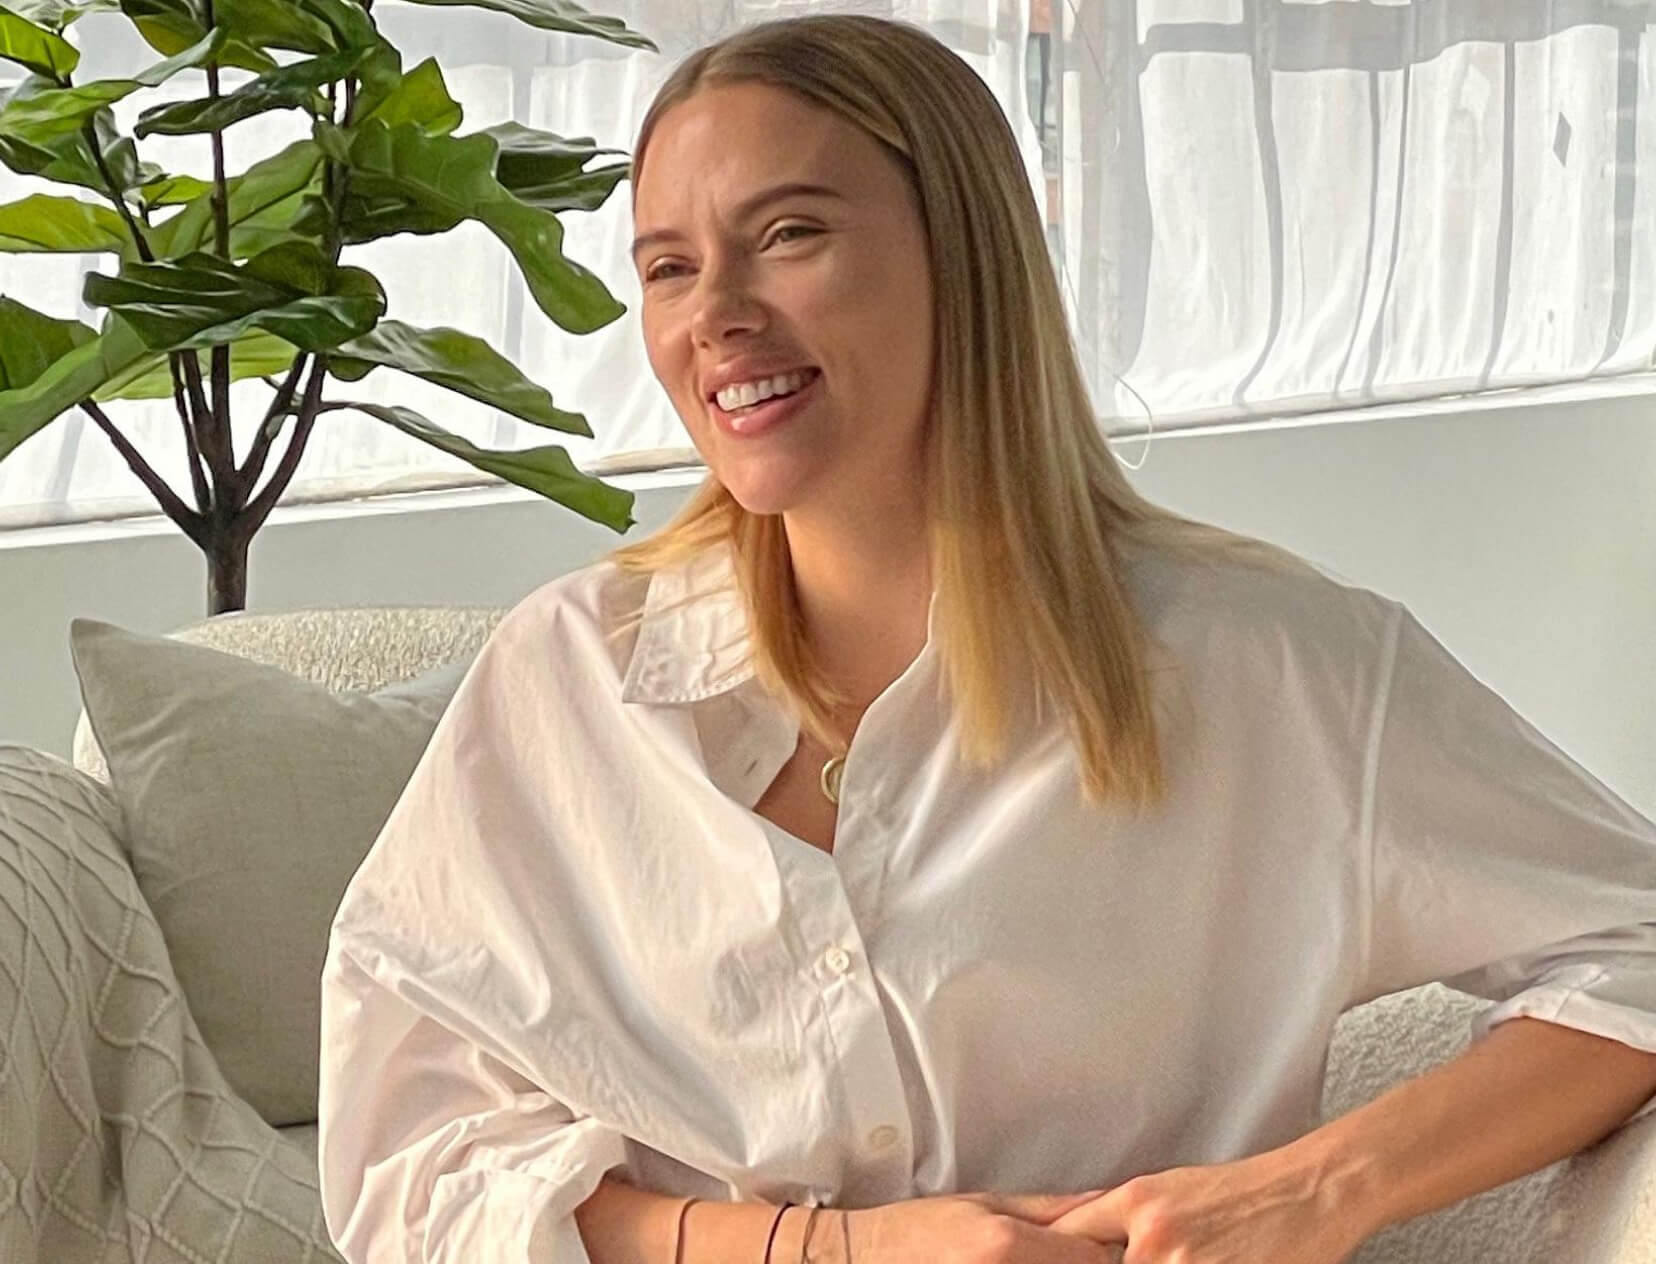 How Scarlett Johansson Gets Her Skin Ready in Under 3 Minutes